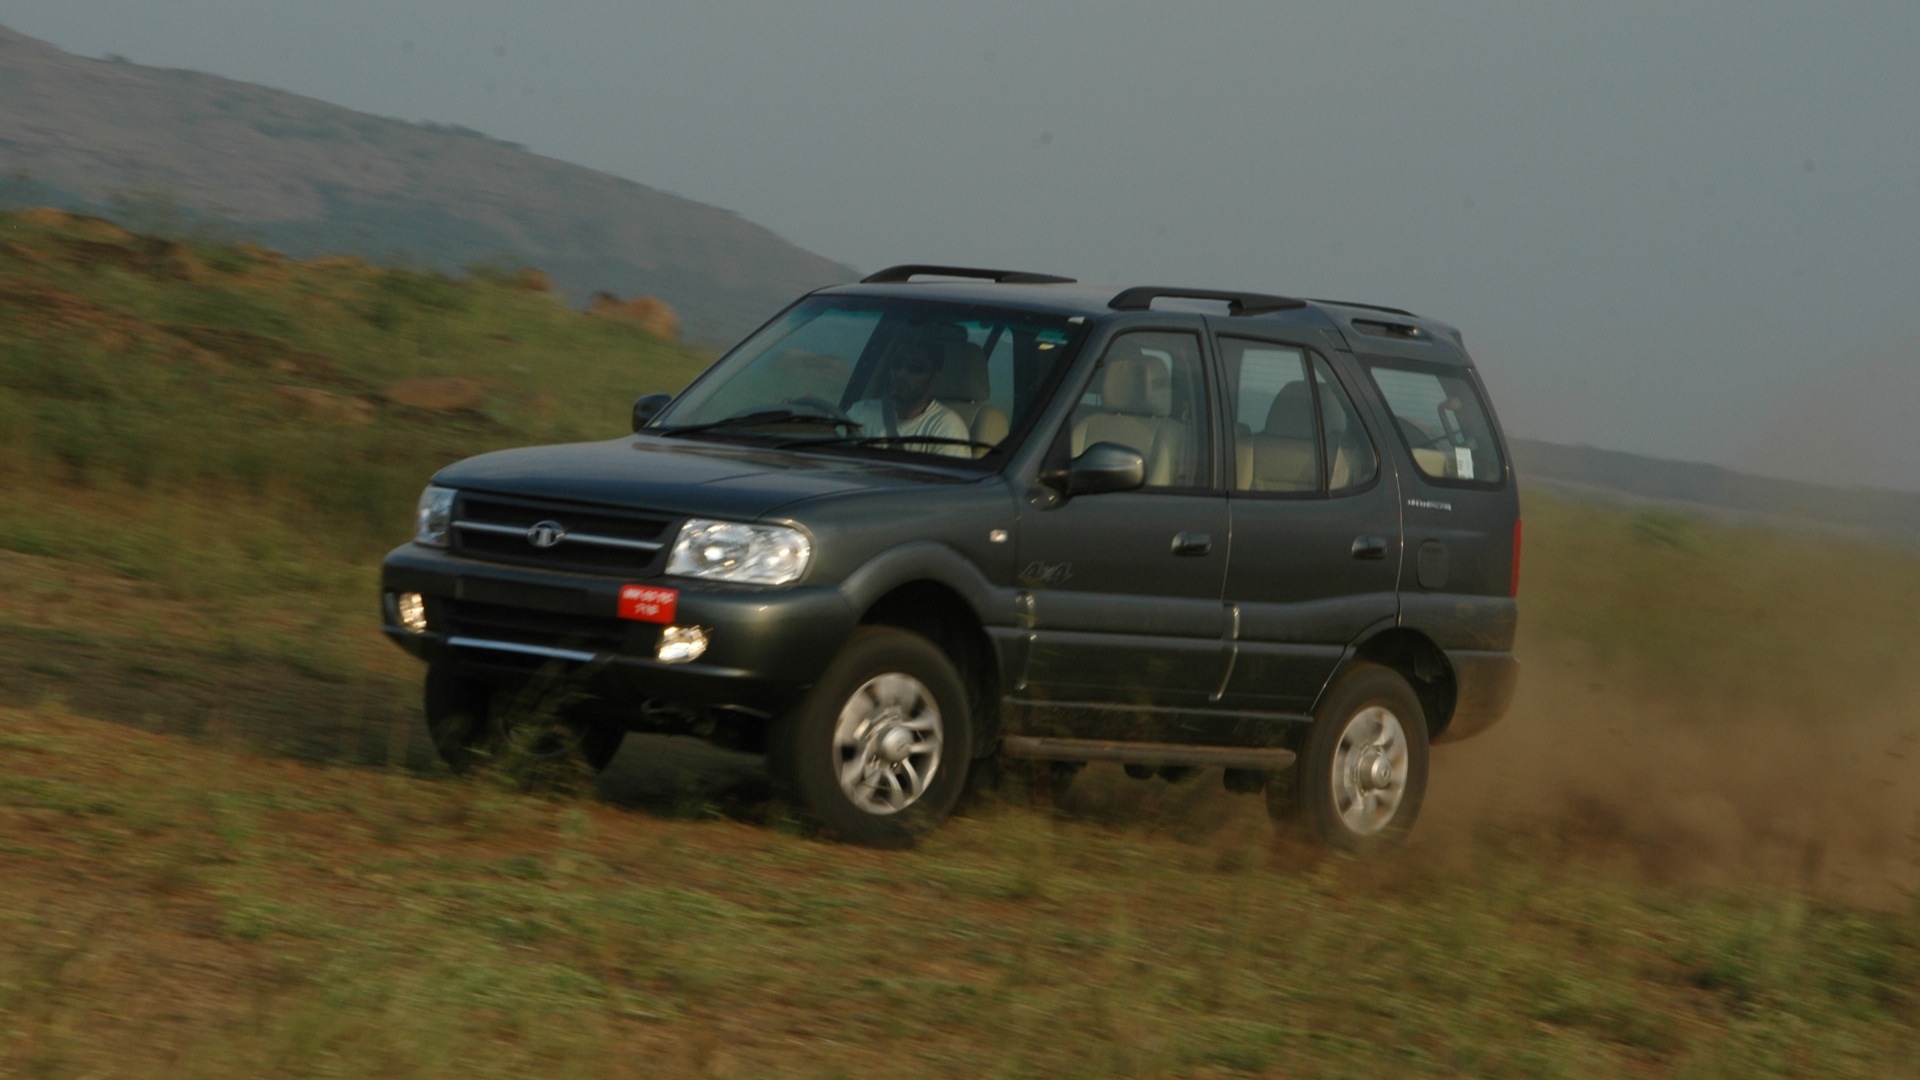 Tata-Safari-2013-2-2-Dicor-LX-2WD-Compare